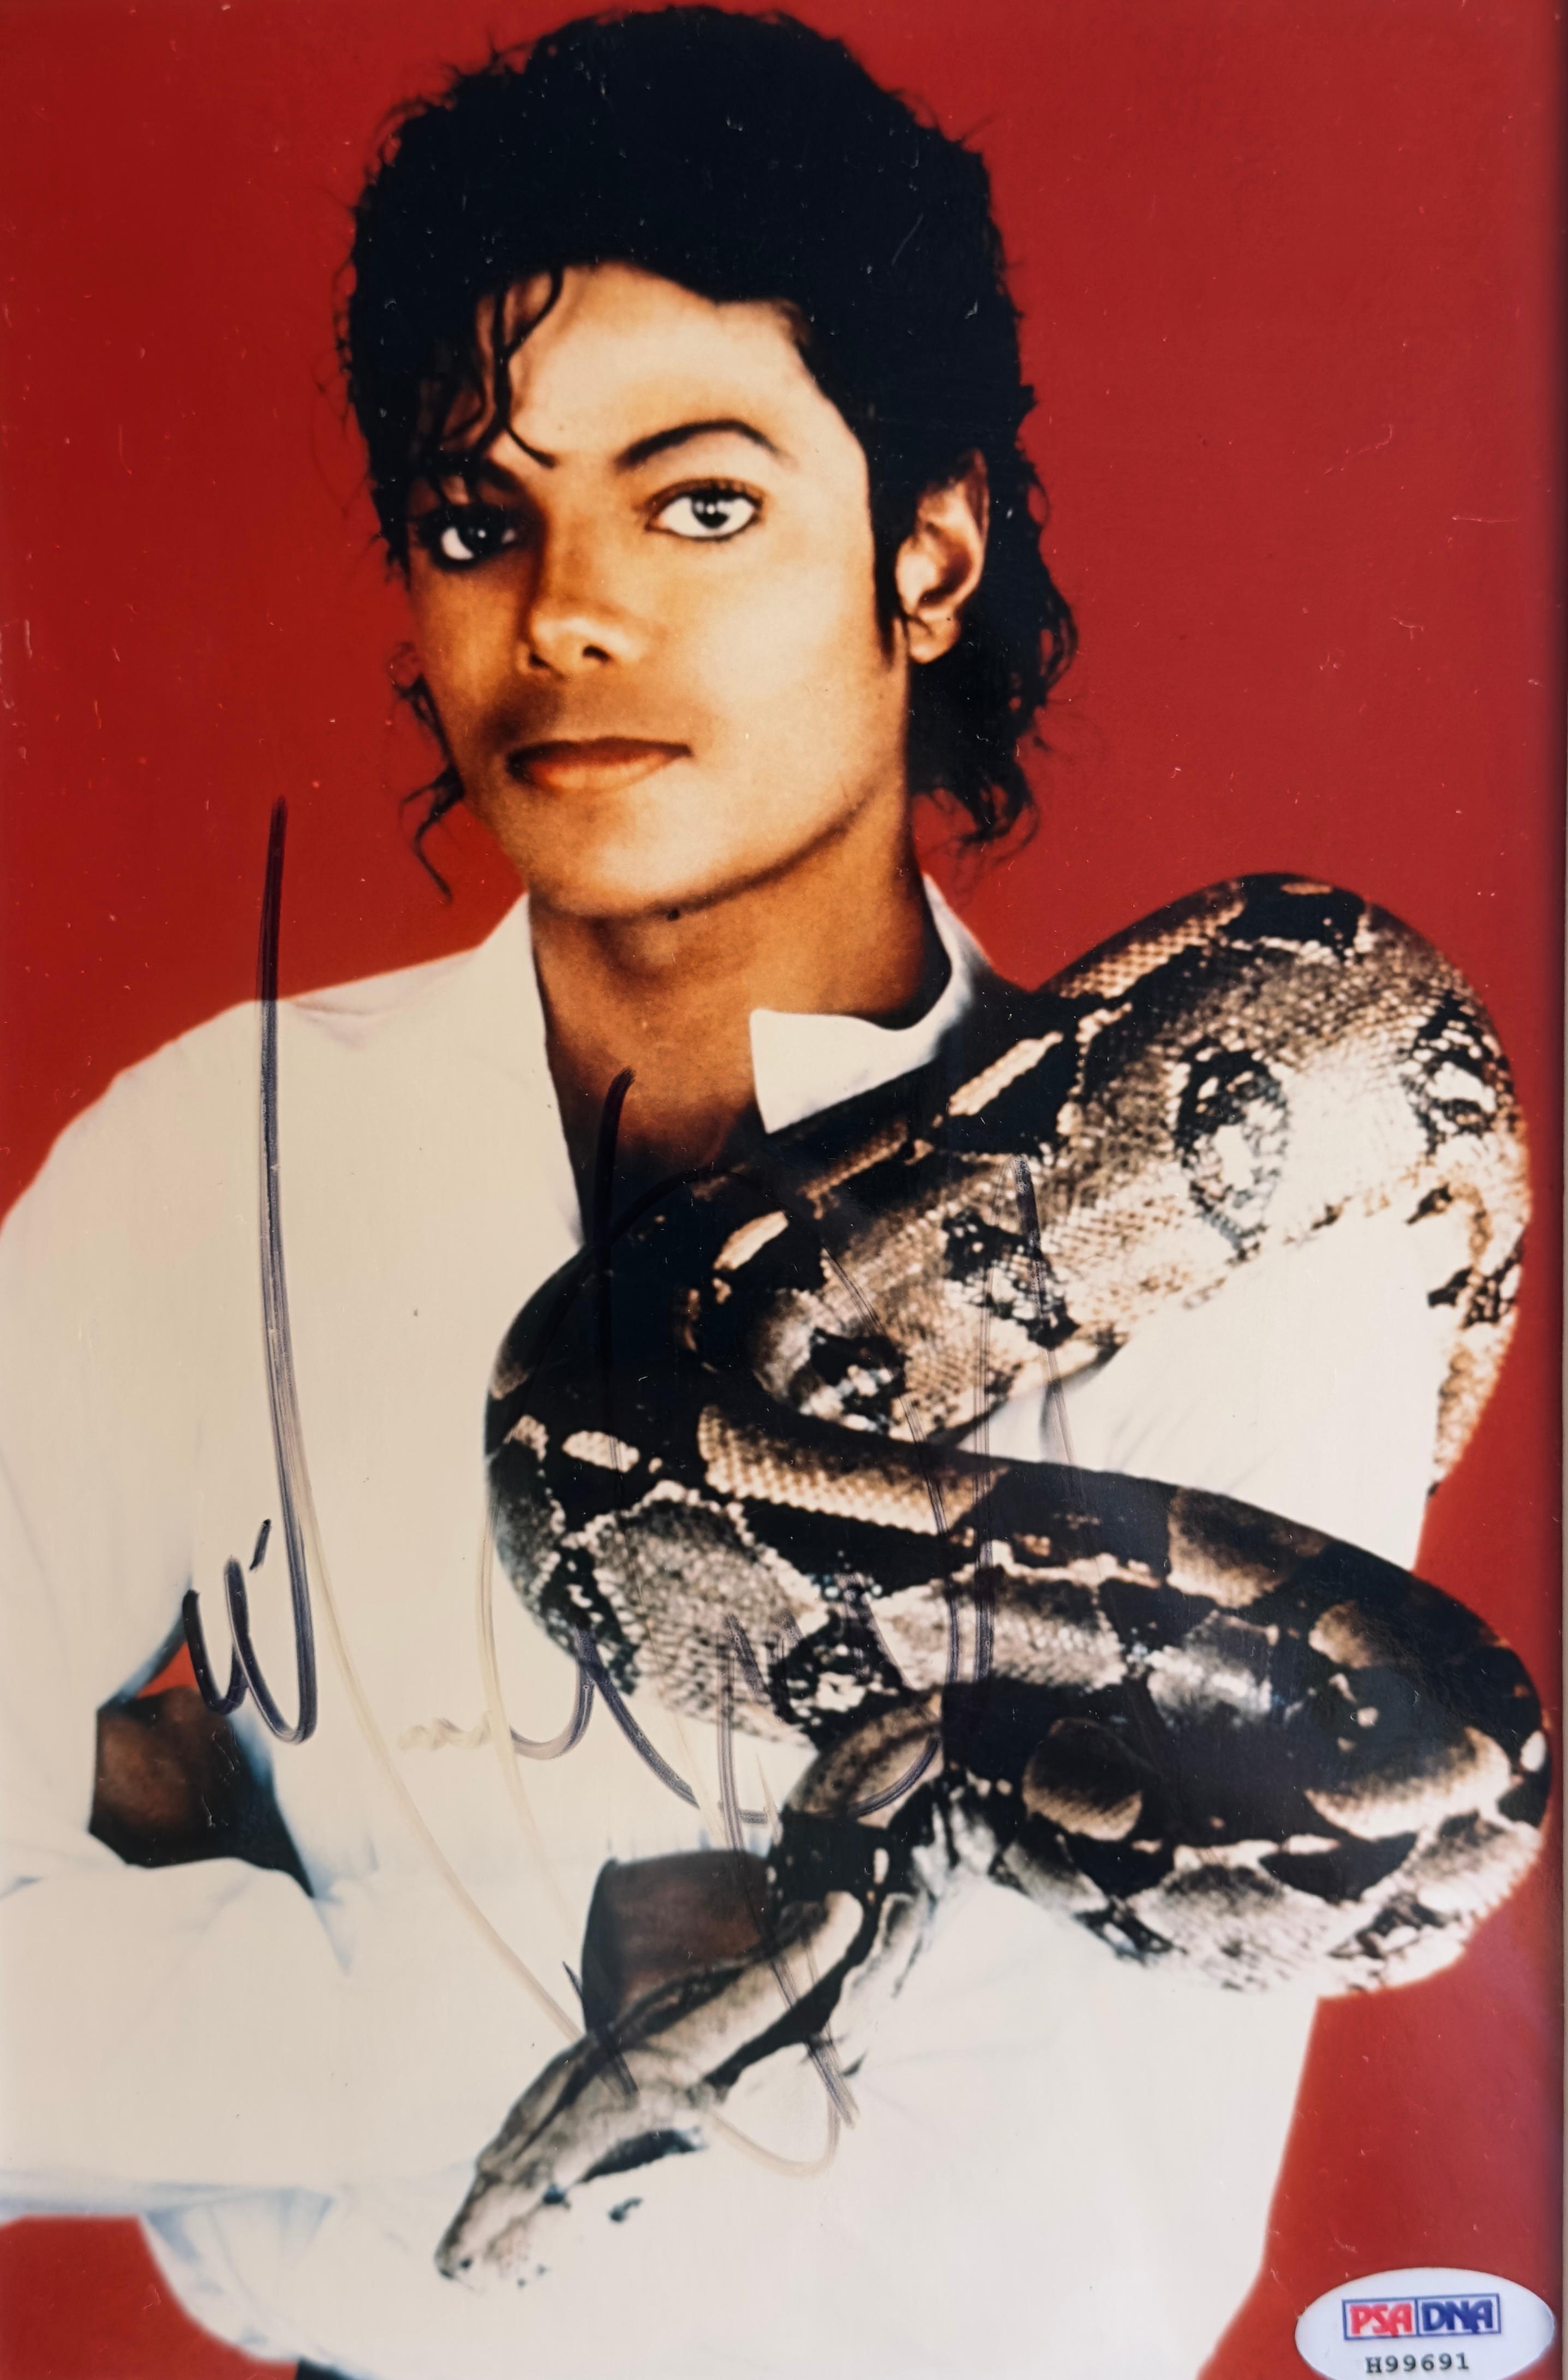 Autographe original de Michael Jackson

certificat : PSA/DNA no H99691 (inclus) 

tableau ca 9.25 x 6.29 pouces (23.5 x 16)
cadre 15,55 x 12 pouces (39,5 x 30,5 cm)